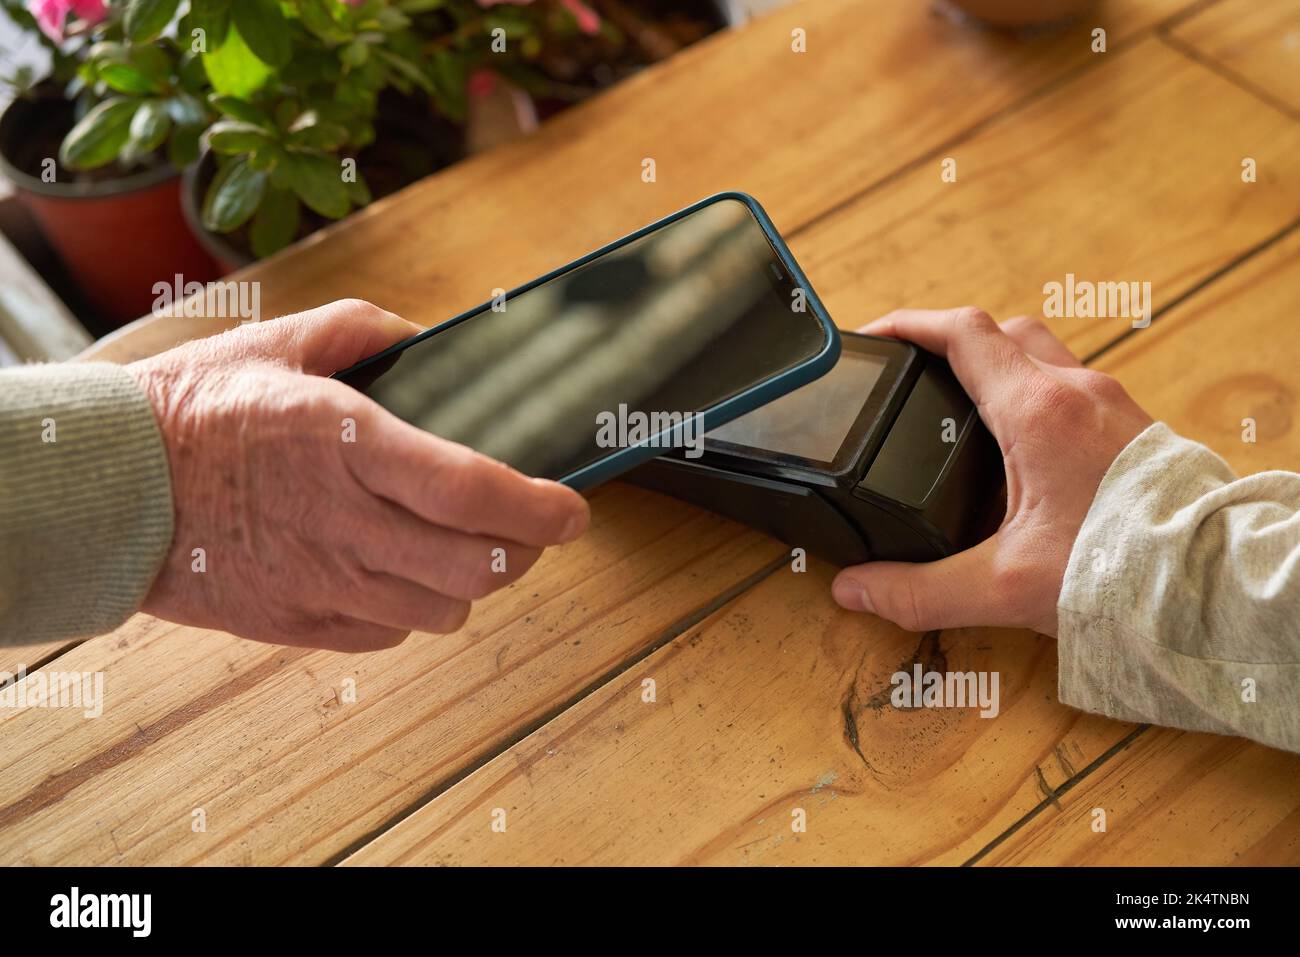 Paiement mobile avec smartphone vers lecteur NFC lors du paiement d'un fleuriste Banque D'Images